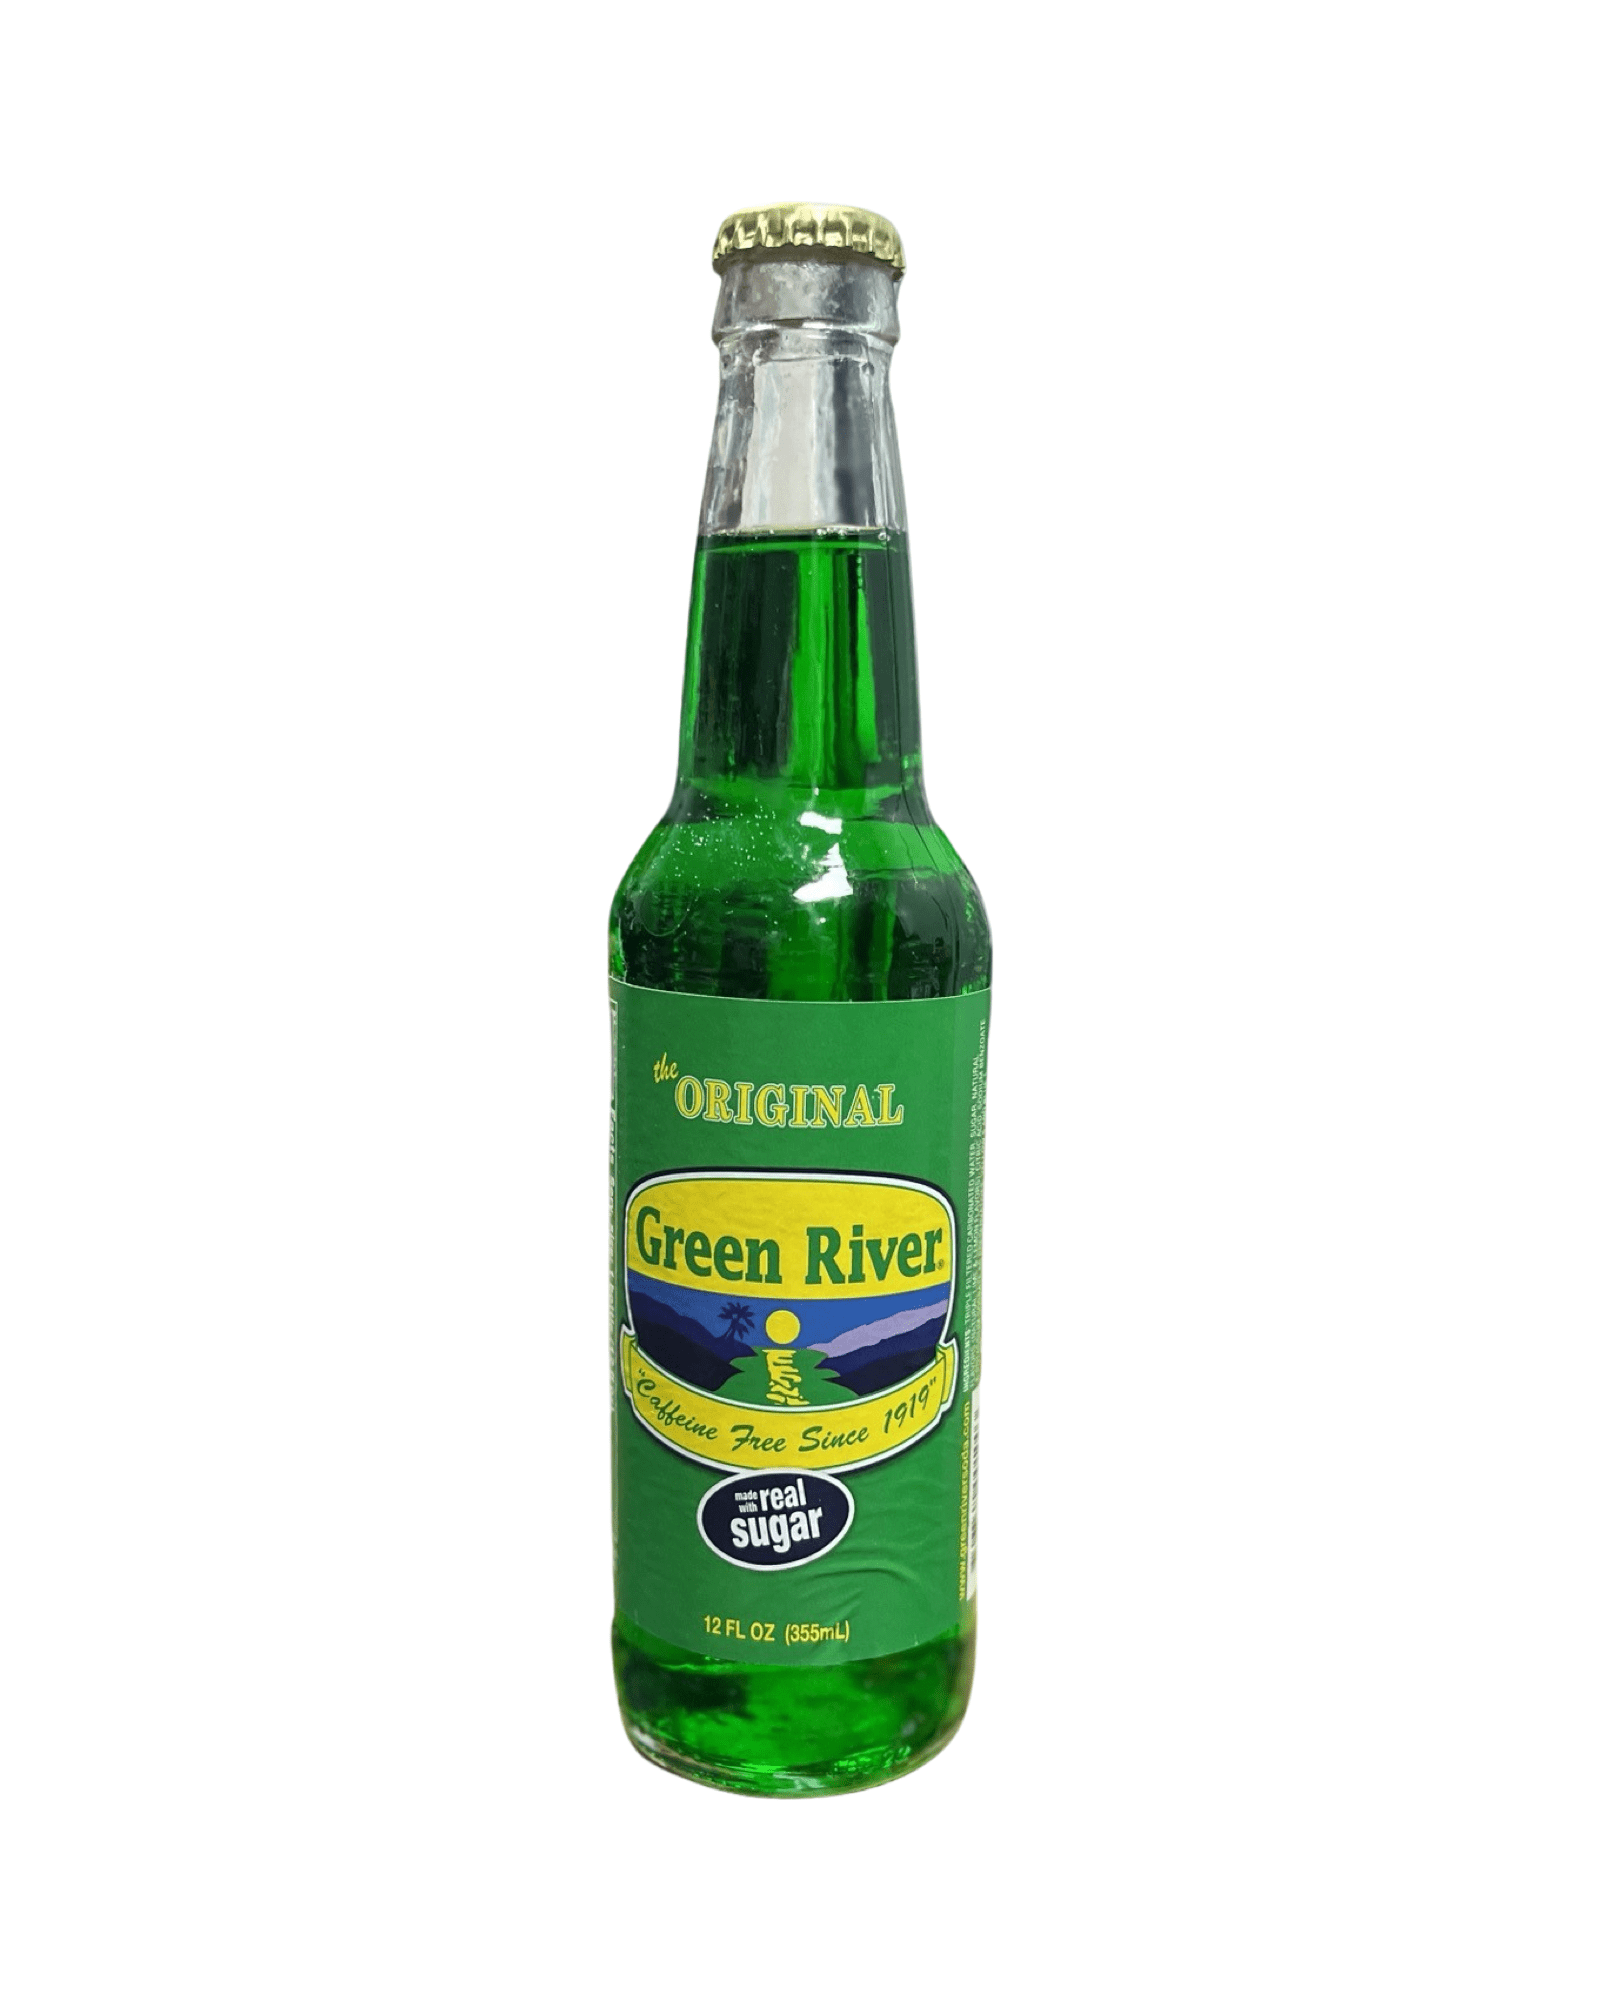 The Original “Green River” (Rare American) - Exotic Soda Company